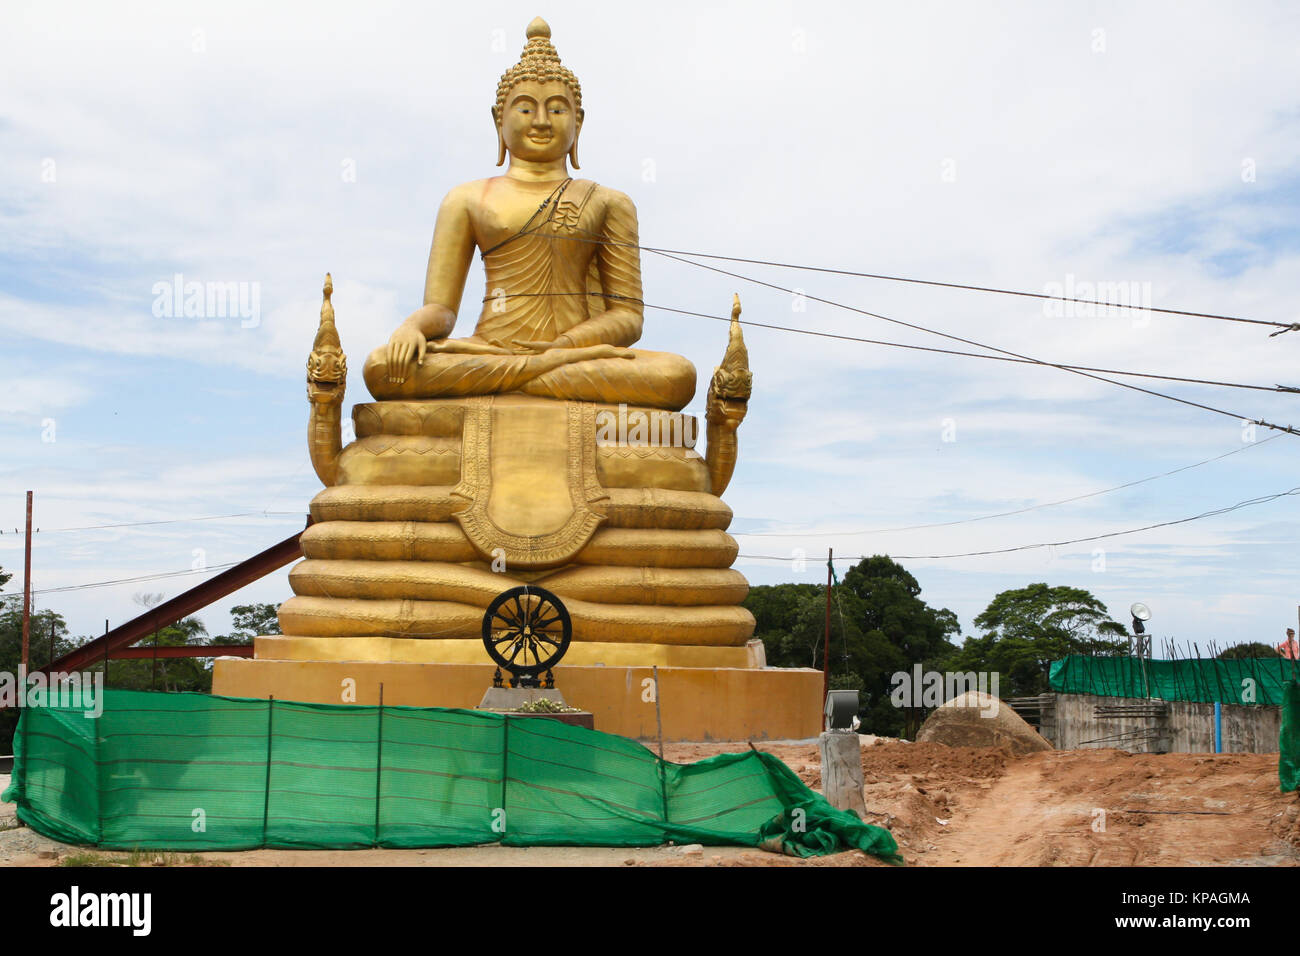 Buddha golden Denkmal Baustelle. Denkmal boundede durch Seile. Über blauen bewölkten Himmel Hintergrund. Stockfoto